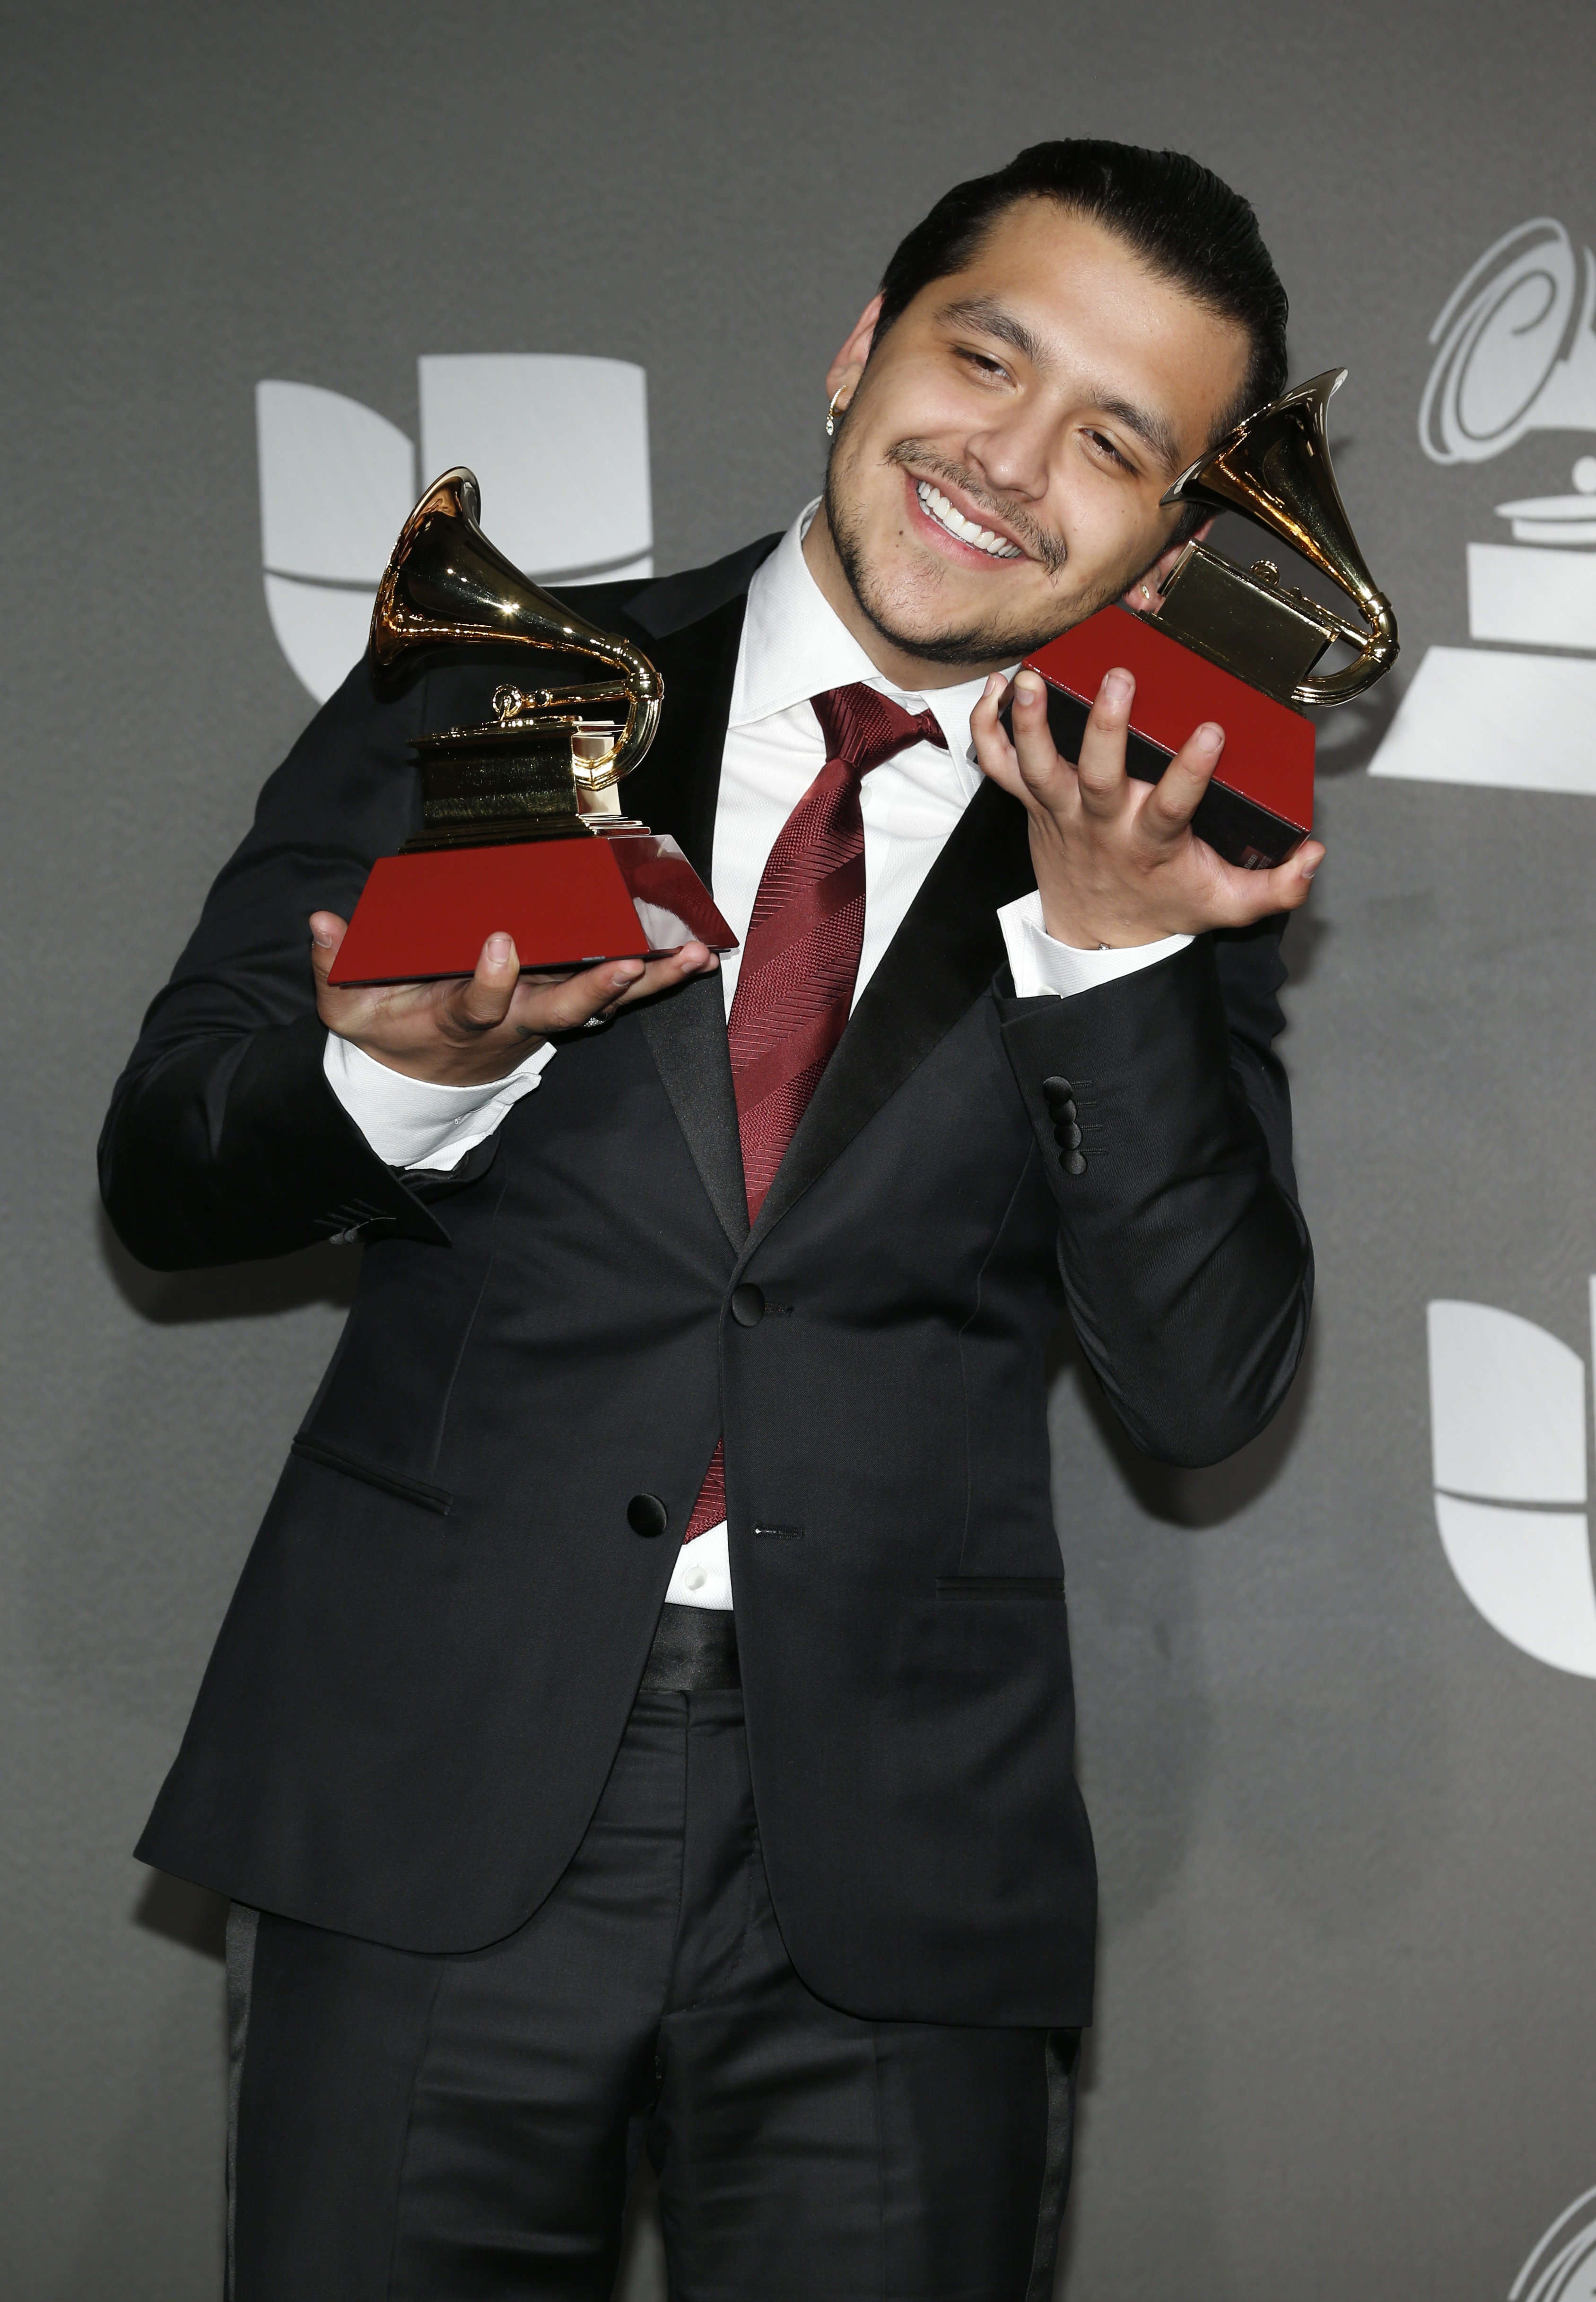 Christian Nodal posa en la sala de prensa con los premios al mejor álbum ranchero/mariachi y a la mejor canción regional en la 20ª Entrega de los Latin Grammy en noviembre de 2019